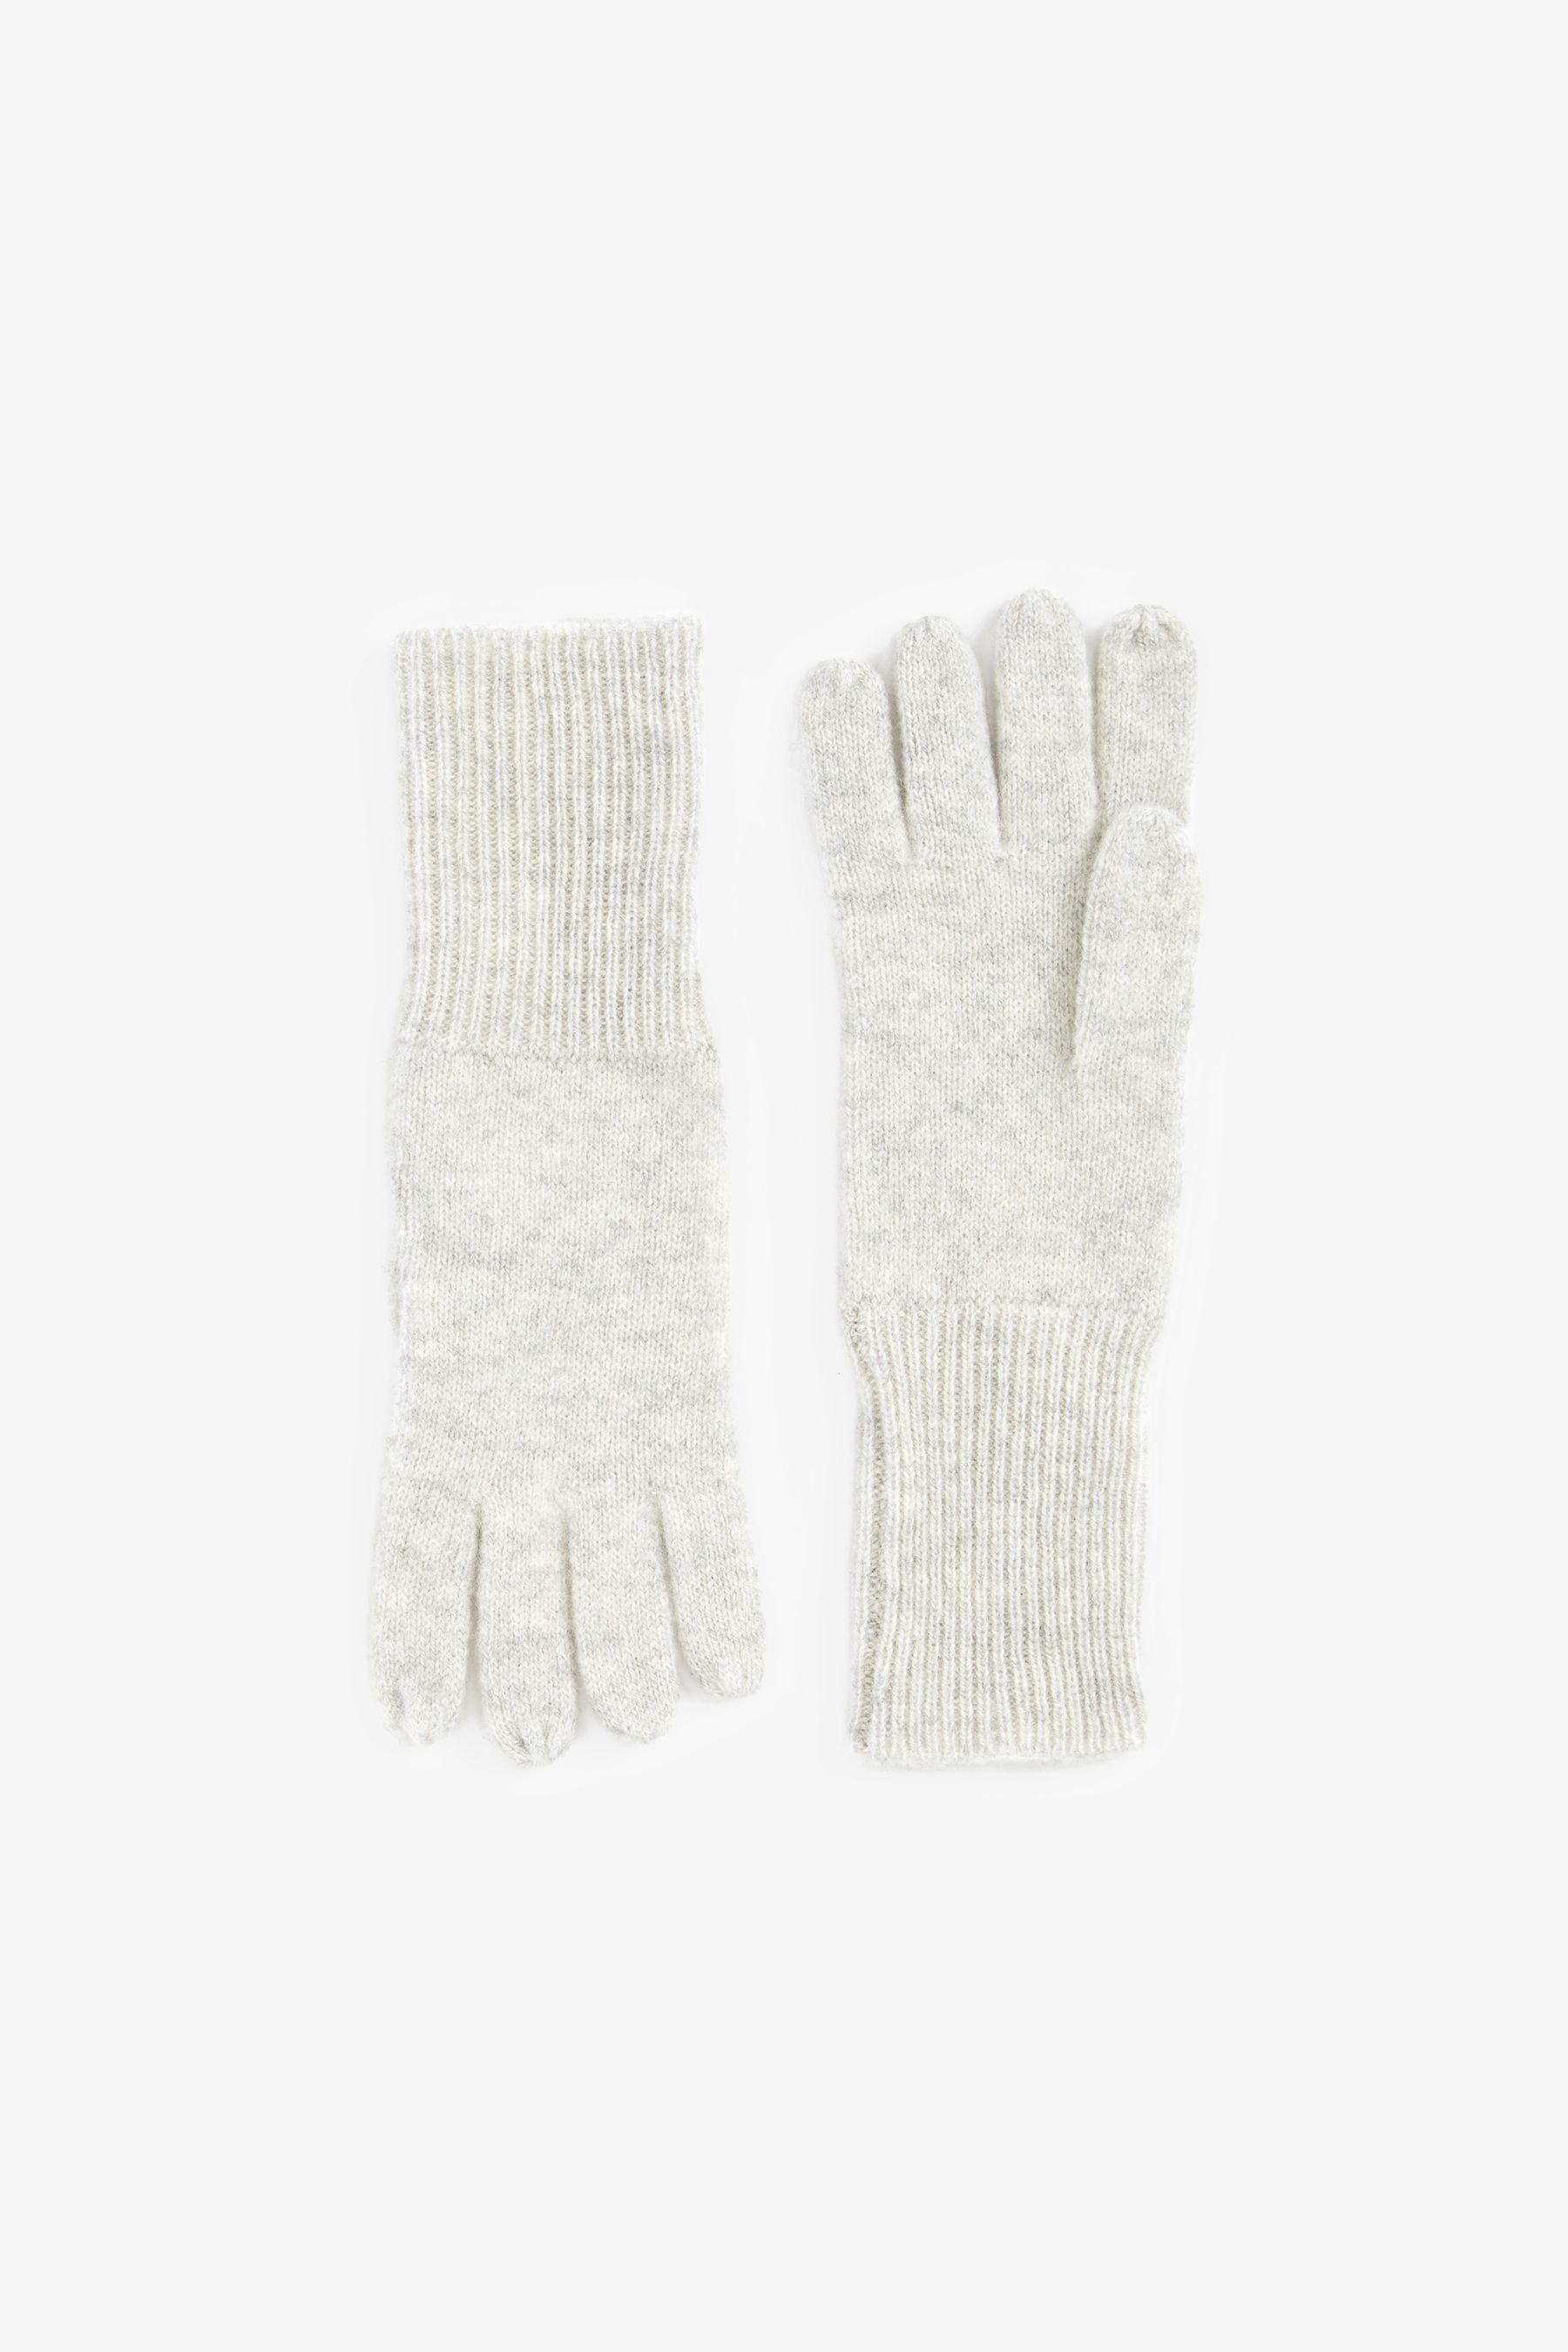 aus Luxe Handschuhe Next Strickhandschuhe Collection Kaschmir Grey 100 %